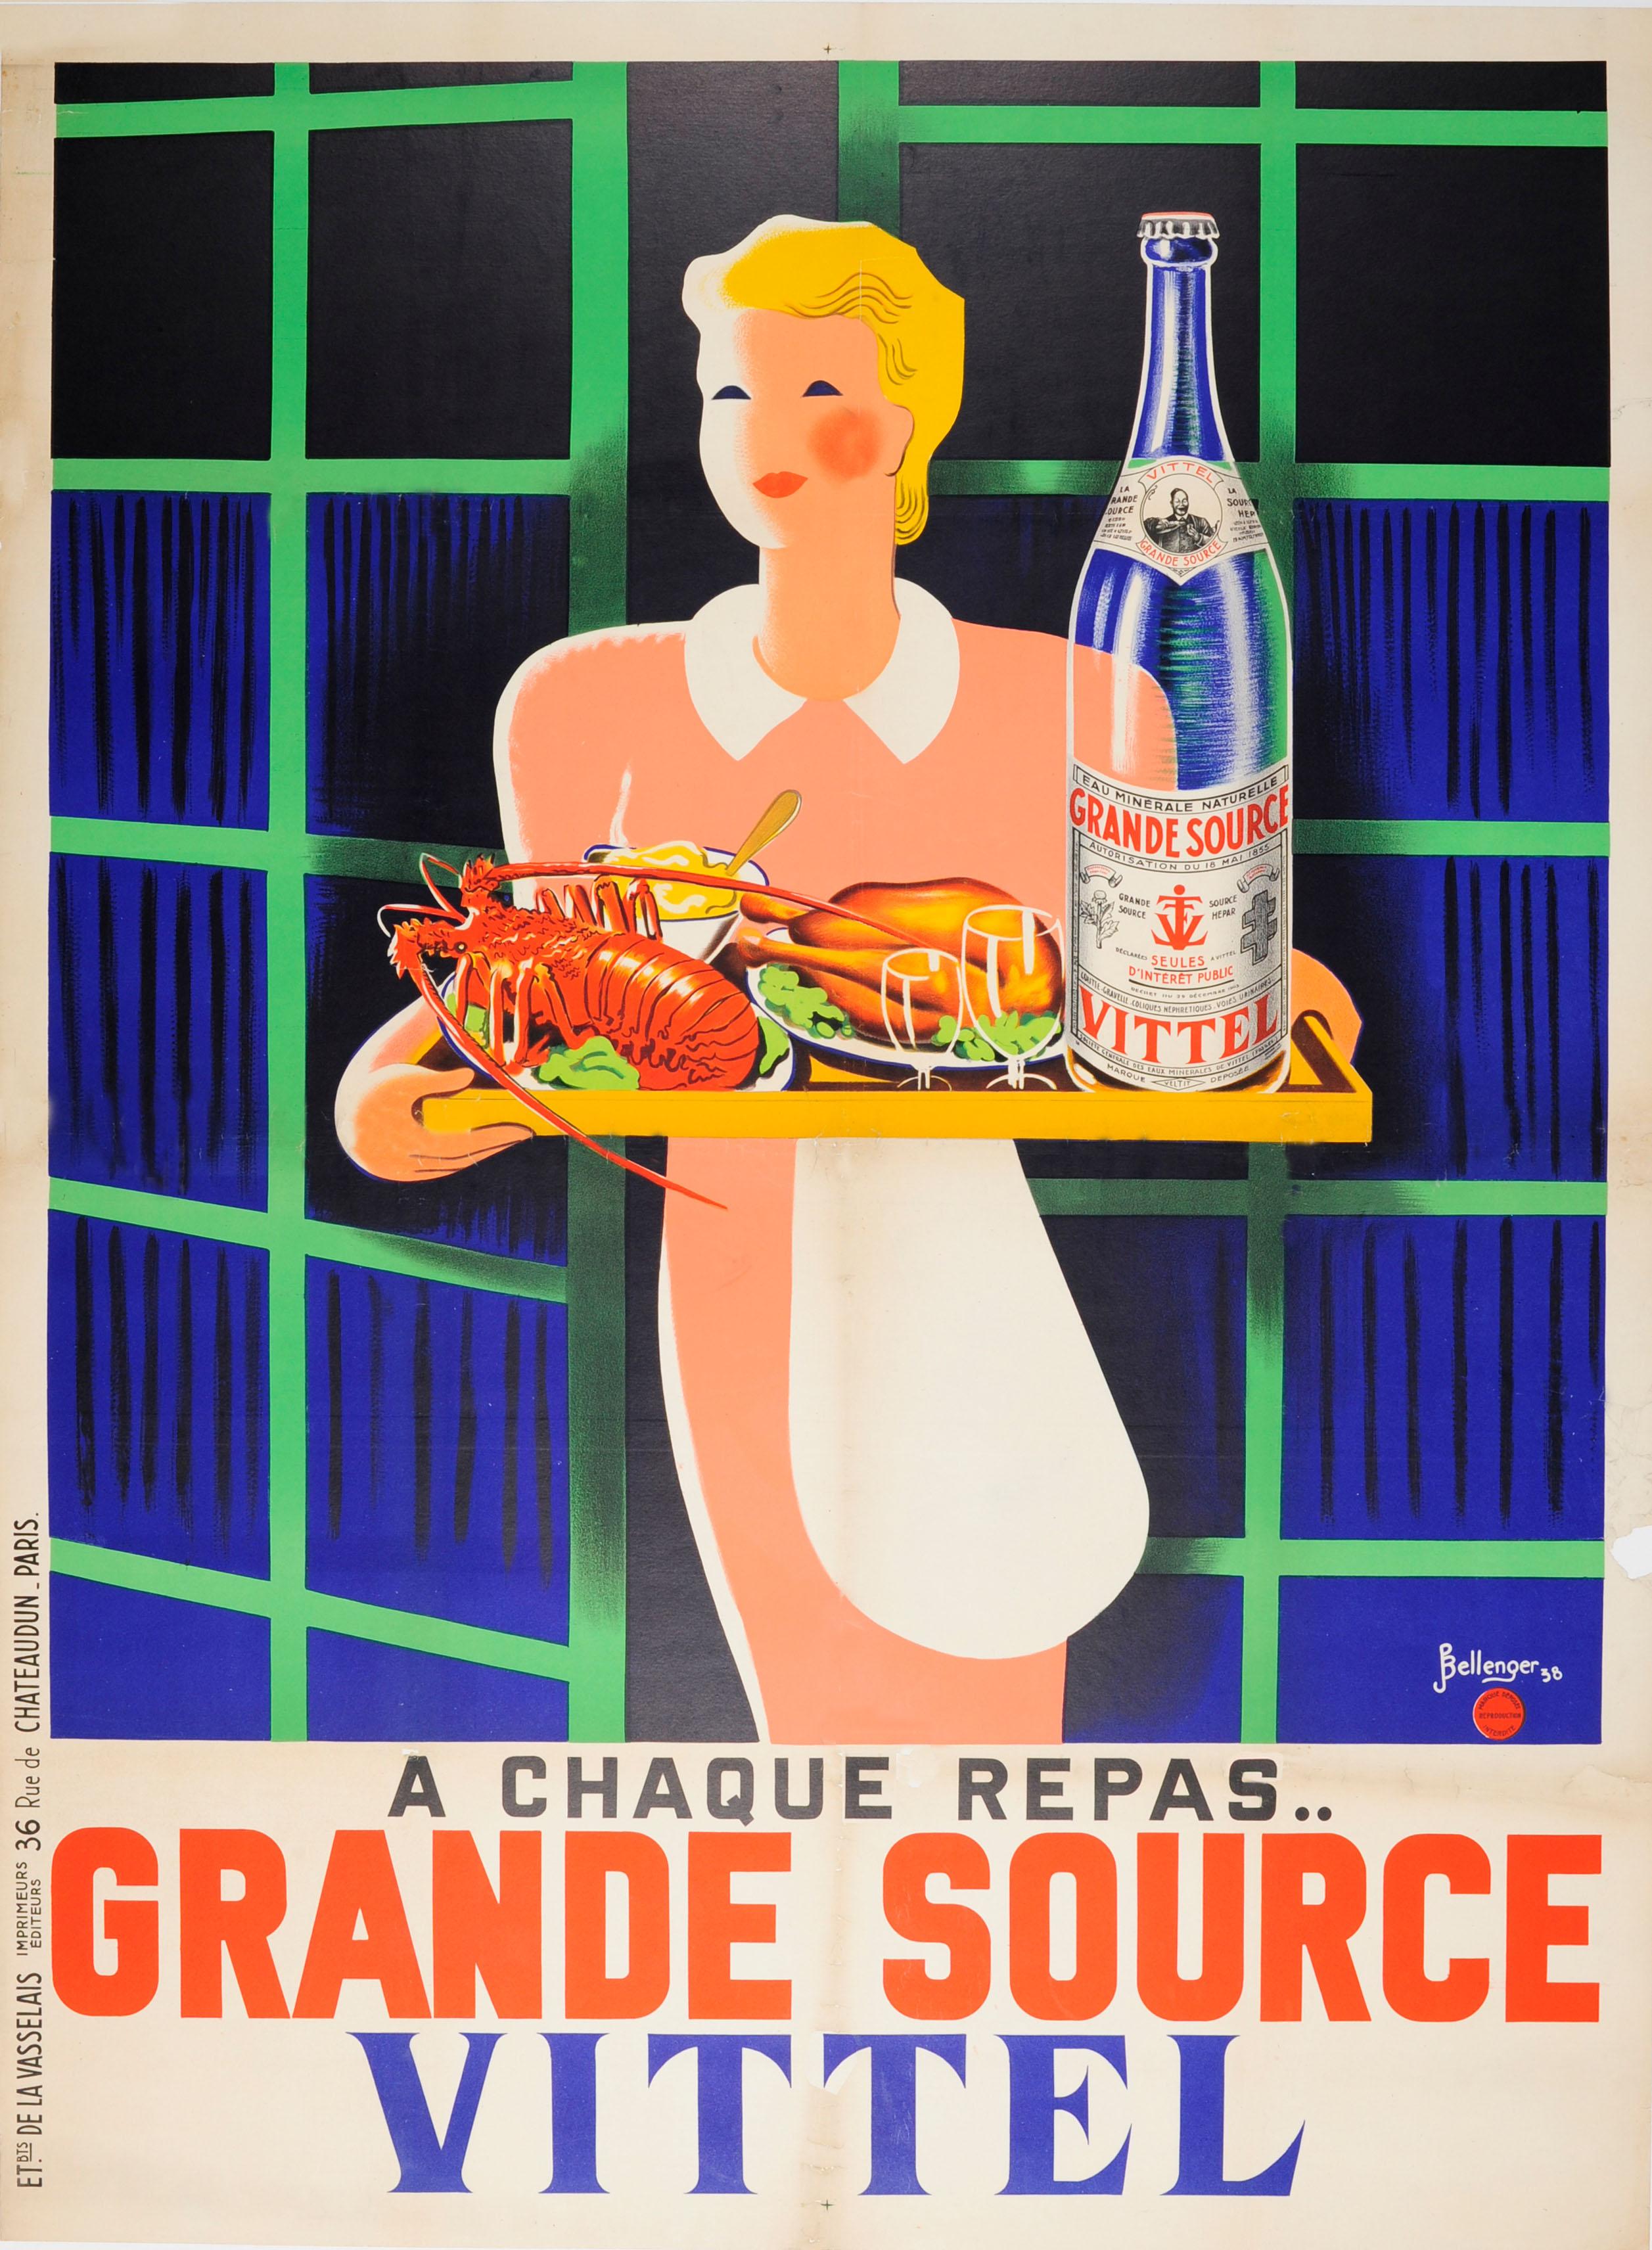 Pierre and Jacques Bellenger Print – Original Vintage-Poster „At Every Meal Grande Source“, Vittel, Mineral, Wasser, Trink